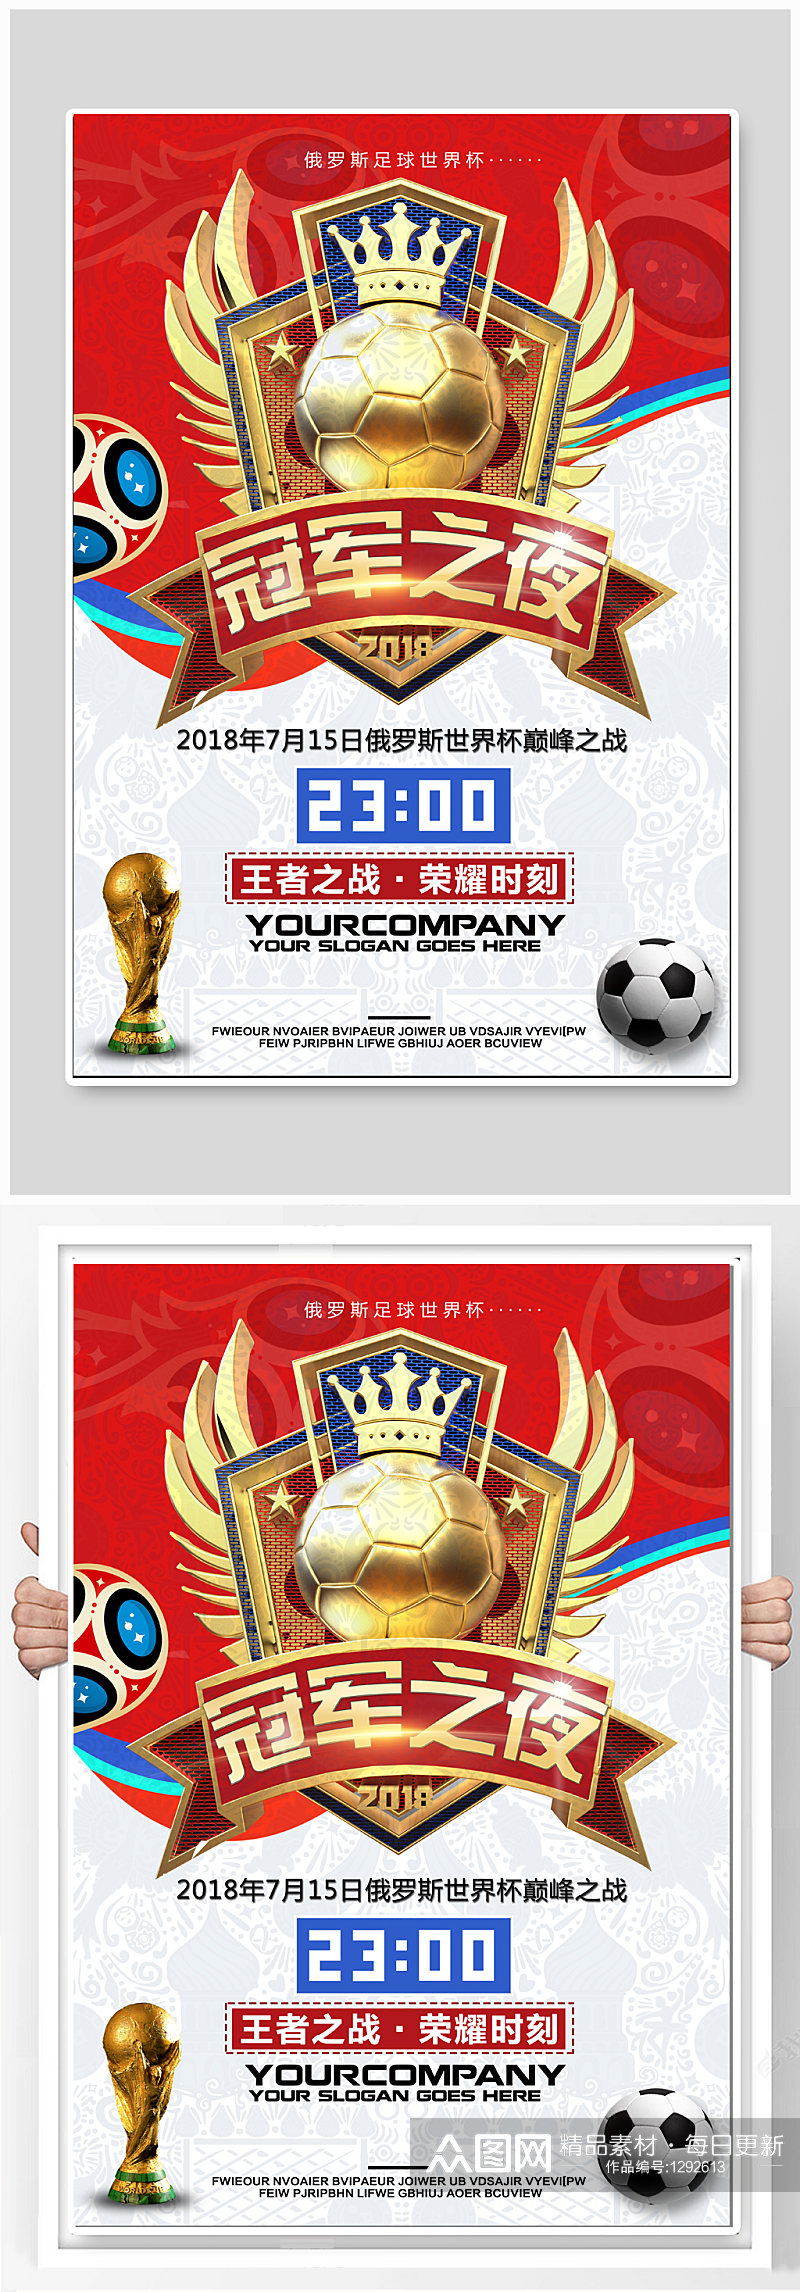 世界杯冠军之夜宣传海报素材